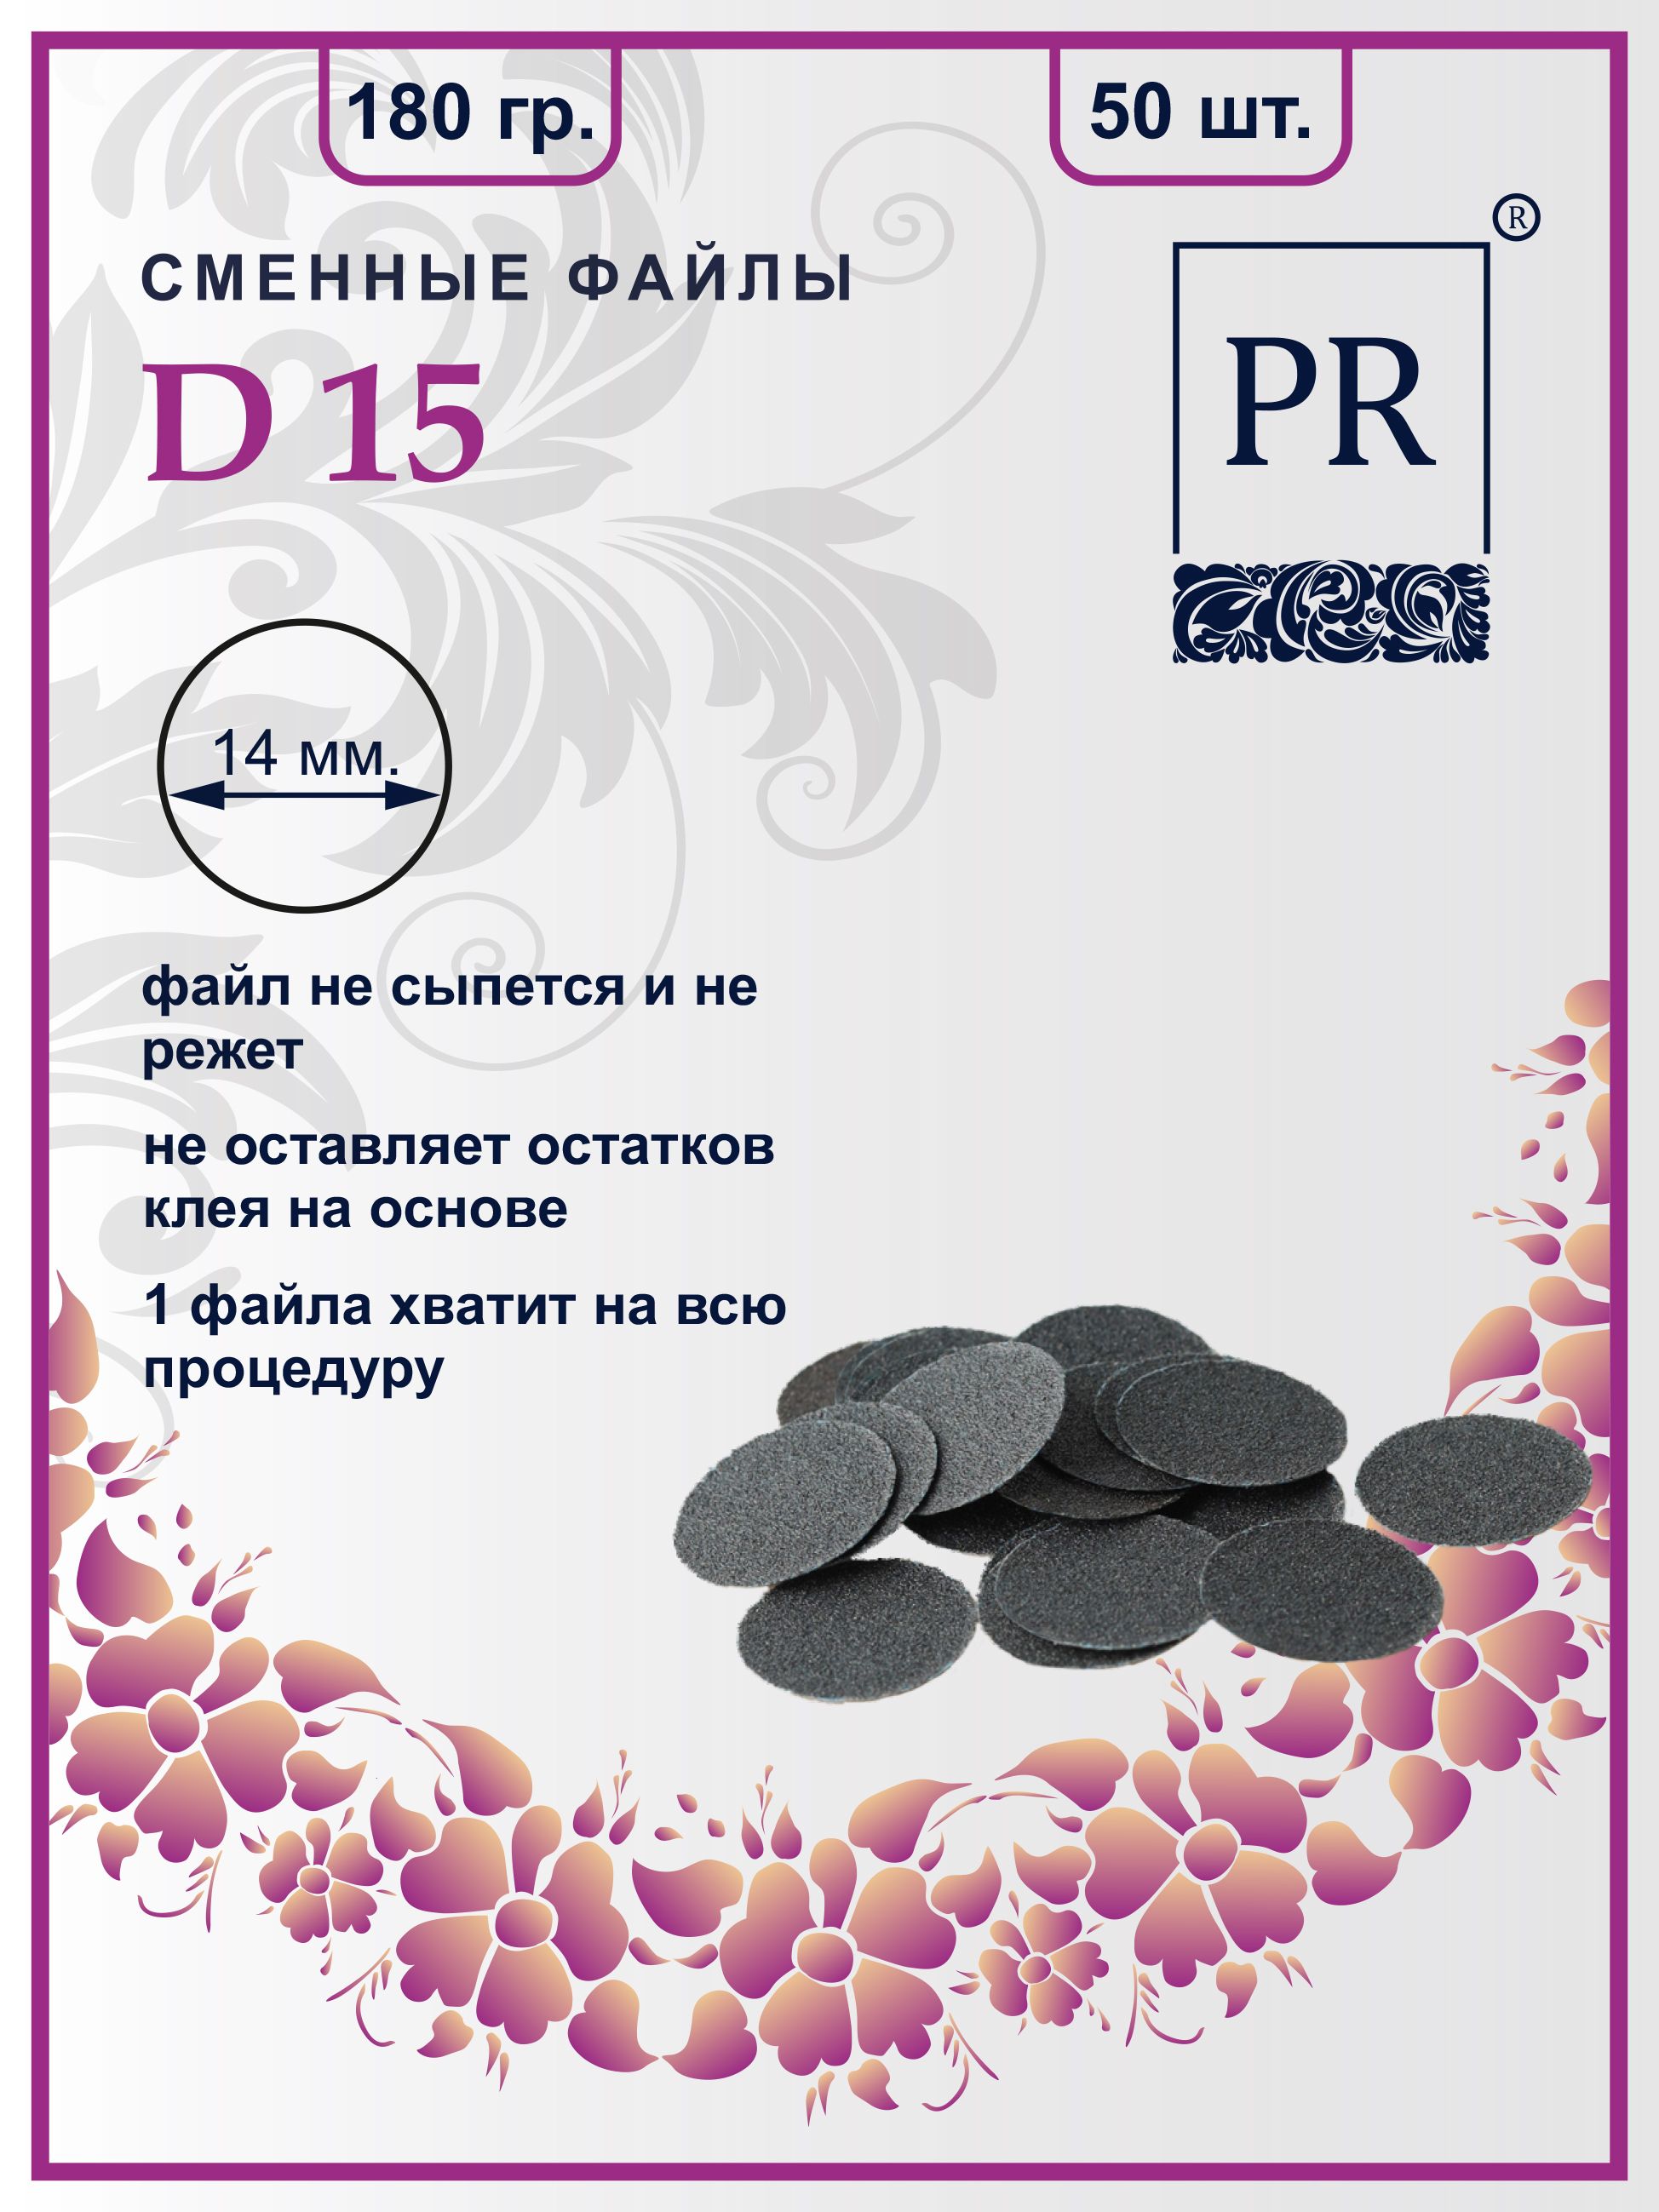 Сменные файлы Pilochki Russia диски для педикюра для диска S 180 грит 50 штук